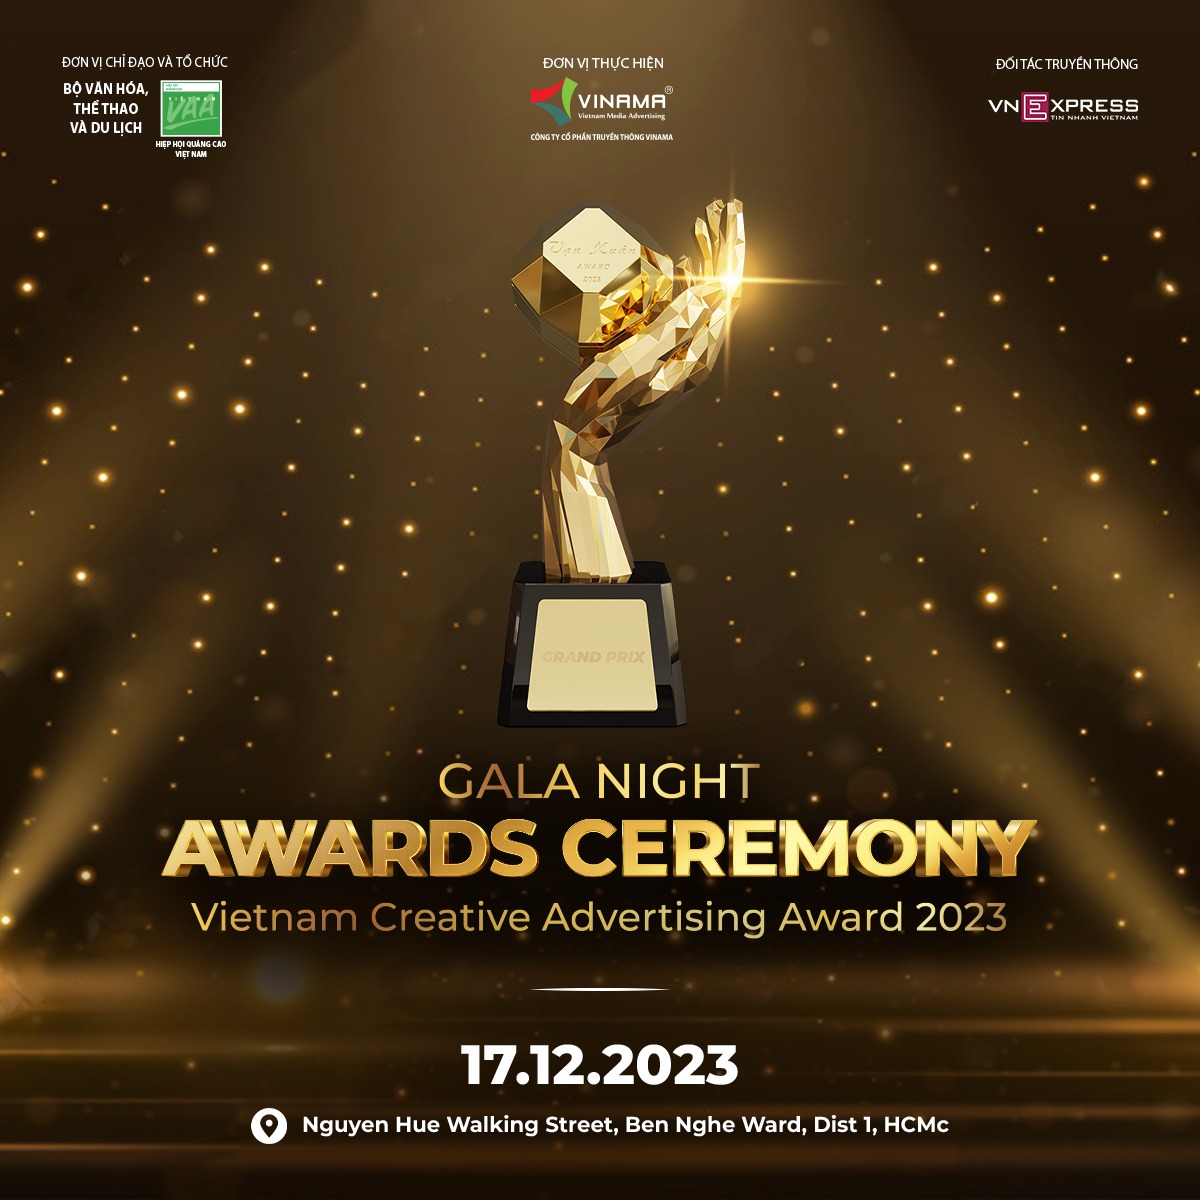 Đêm Gala Chung kết, trao giải Giải thưởng Quảng cáo Sáng tạo Việt Nam 2023